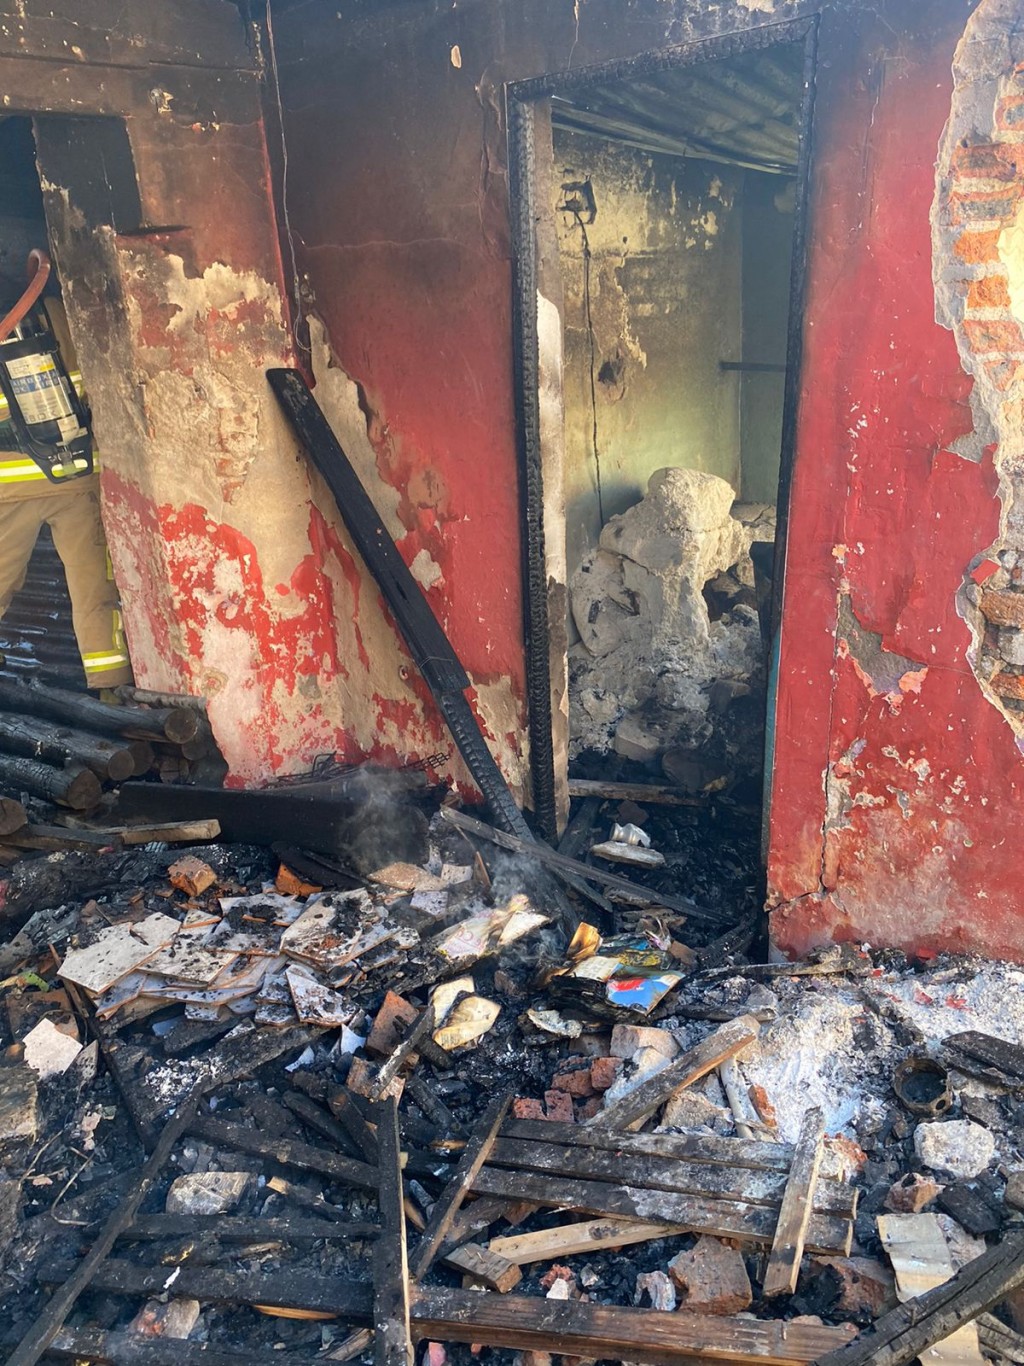  Tragedia: las llamas destruyeron una vivienda